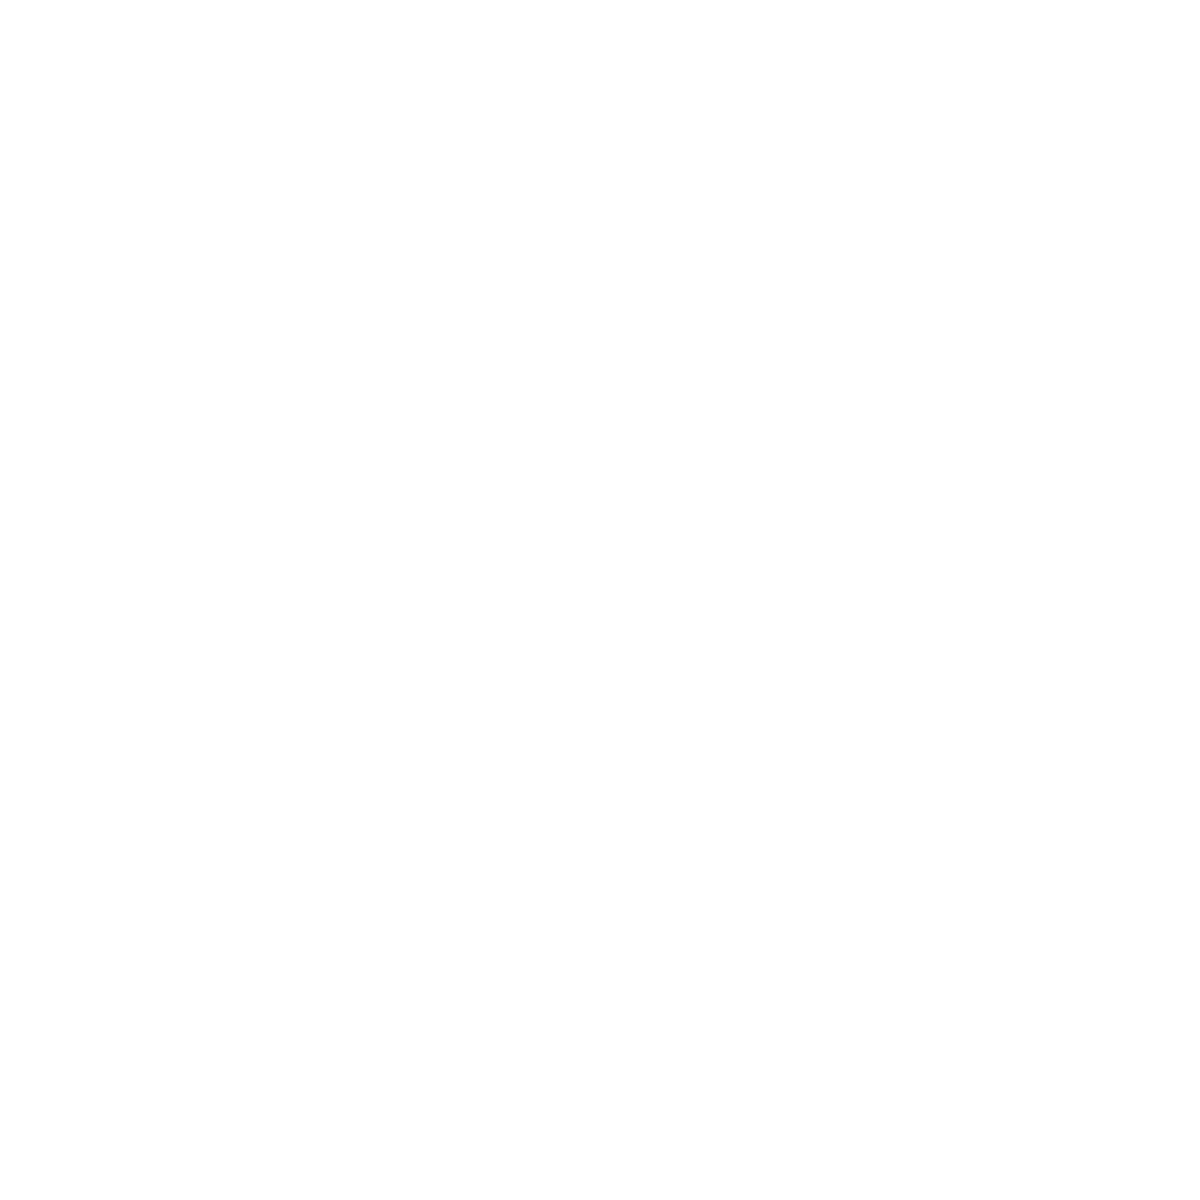 Asistum